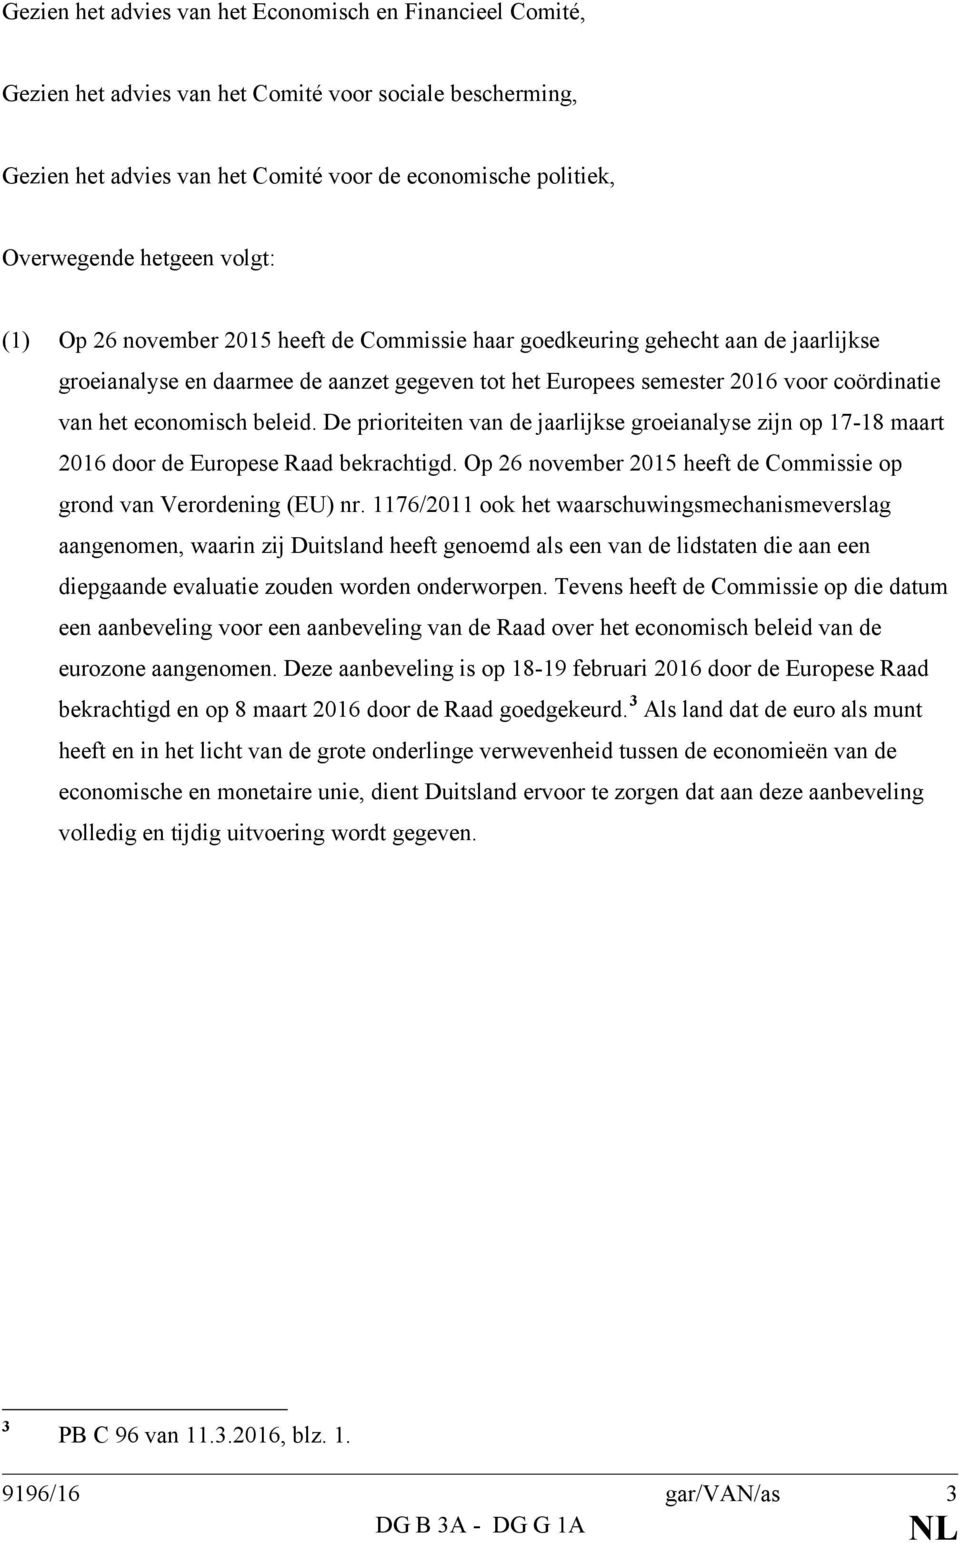 economisch beleid. De prioriteiten van de jaarlijkse groeianalyse zijn op 17-18 maart 2016 door de Europese Raad bekrachtigd. Op 26 november 2015 heeft de Commissie op grond van Verordening (EU) nr.